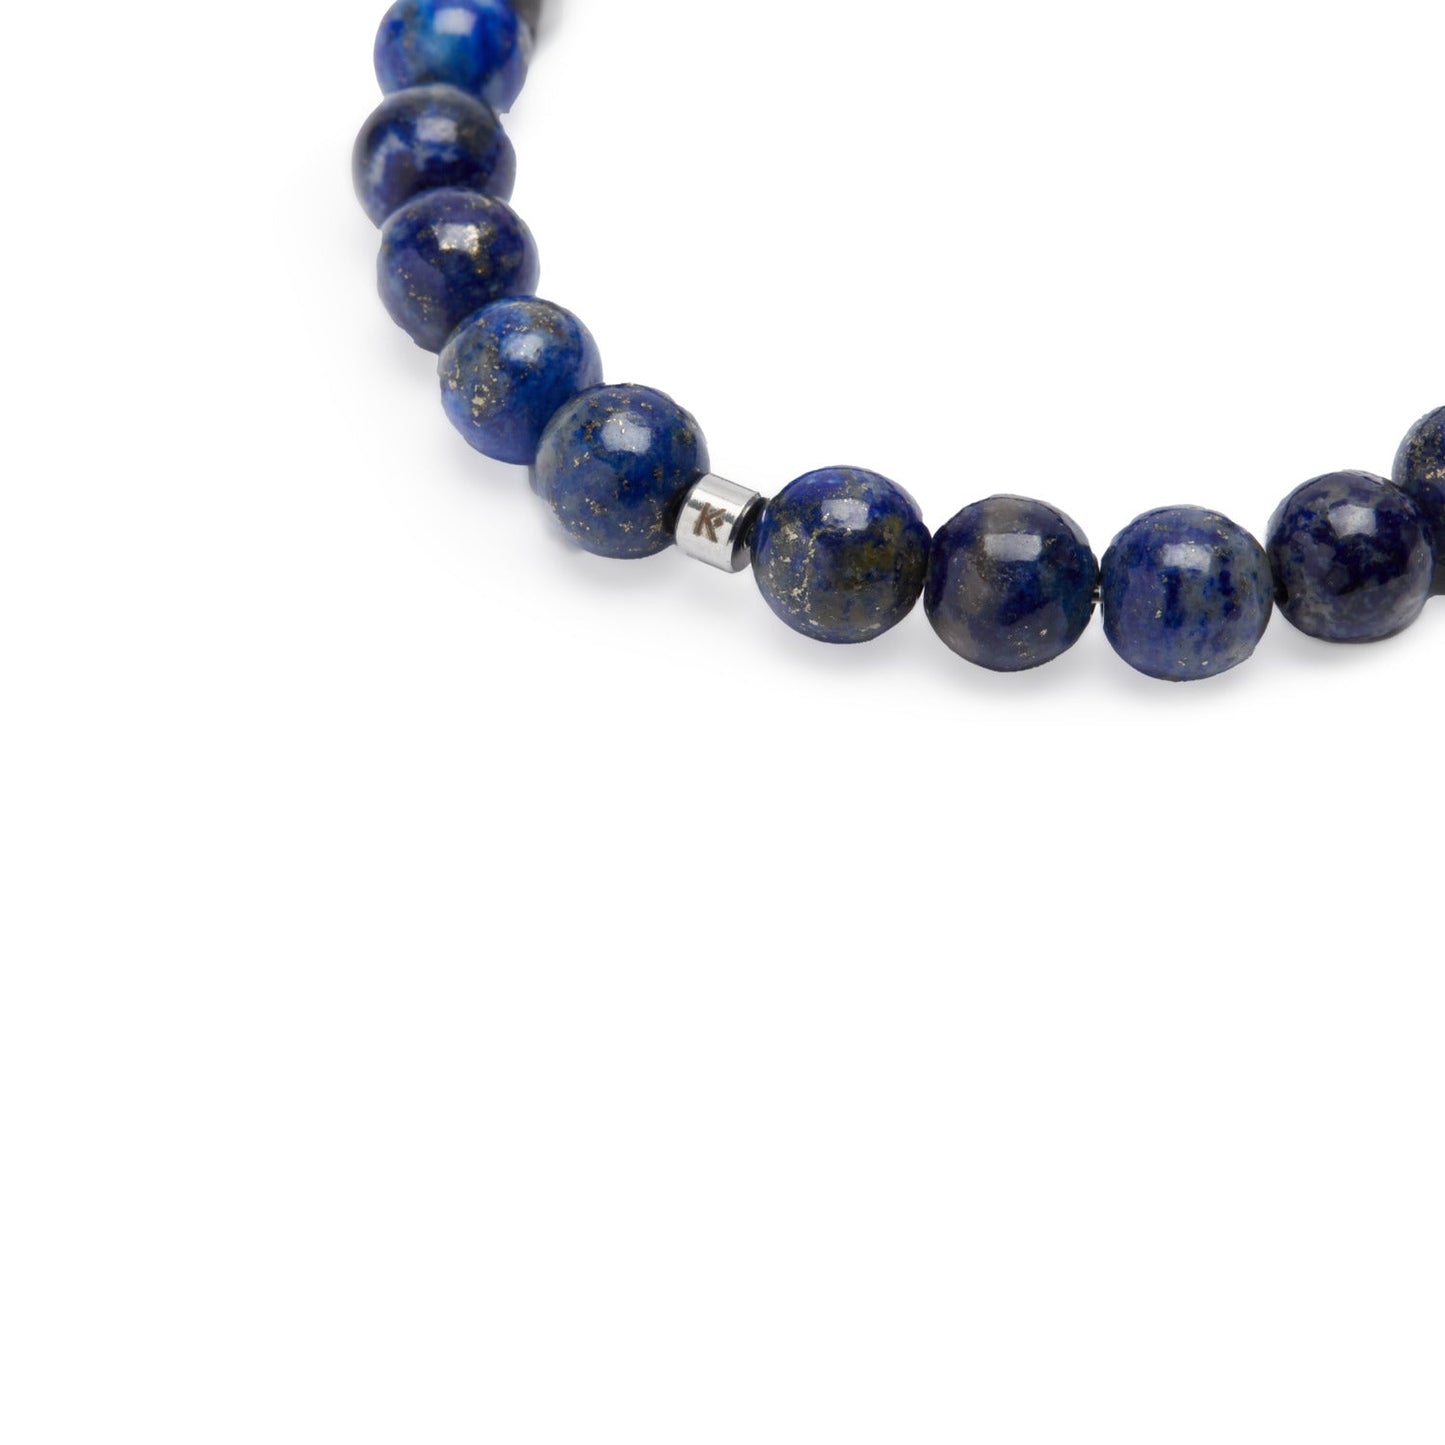 Bracelet Mala "Expression & Confiance" en Lapis Lazuli - Karma Yoga Shop